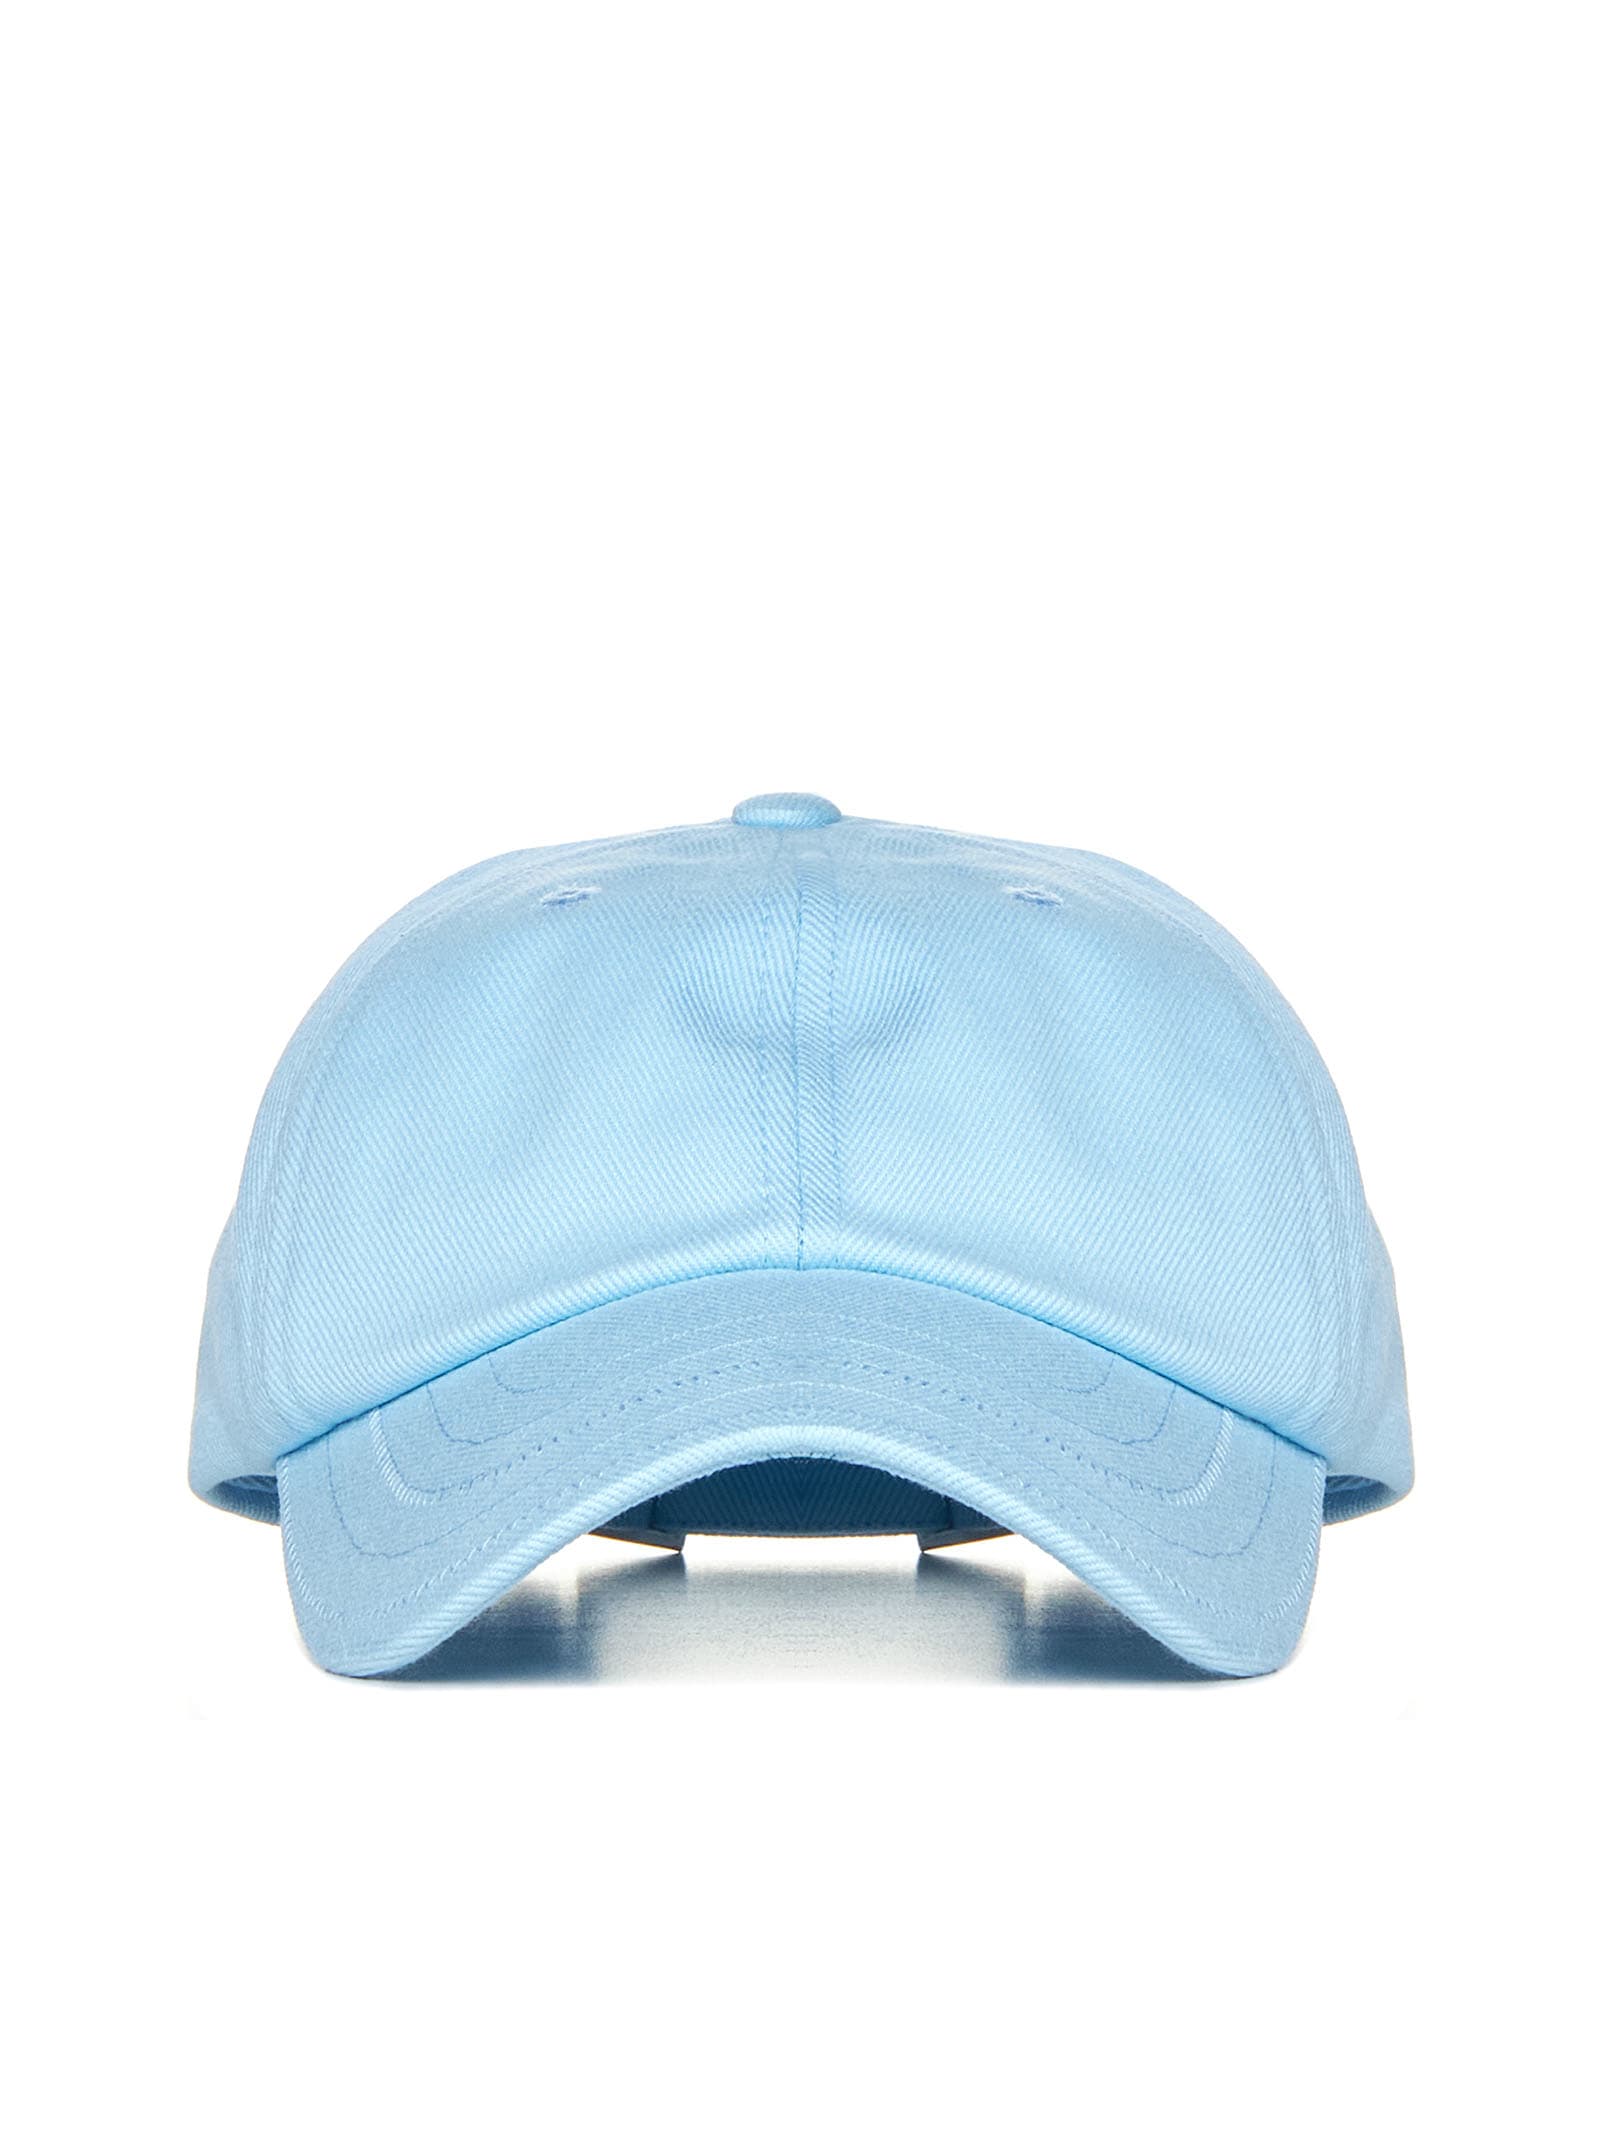 Jacquemus Hat In Blue